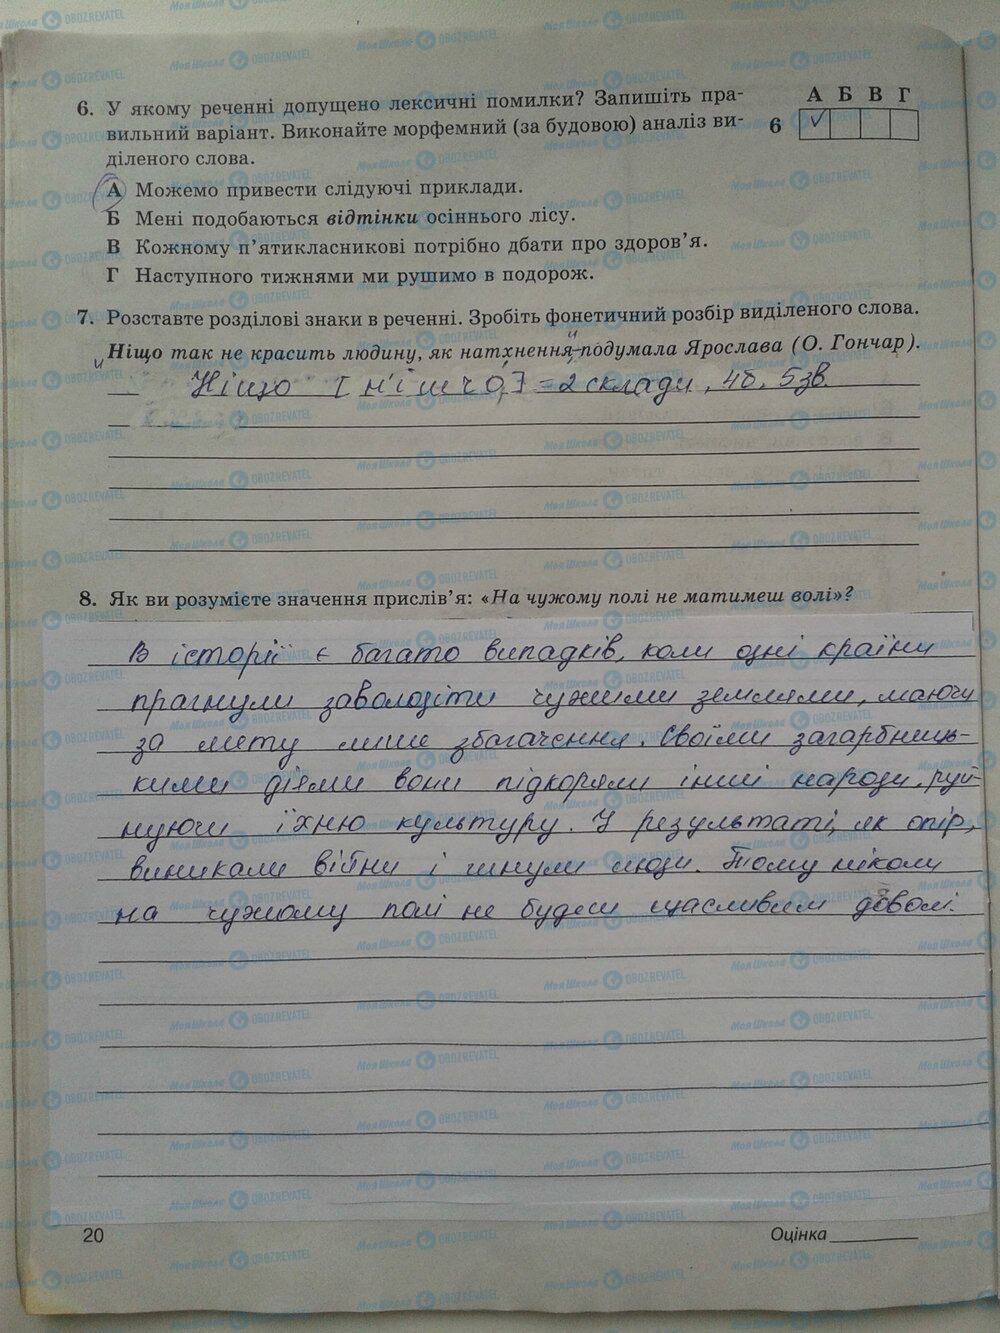 ГДЗ Укр мова 5 класс страница стр. 20